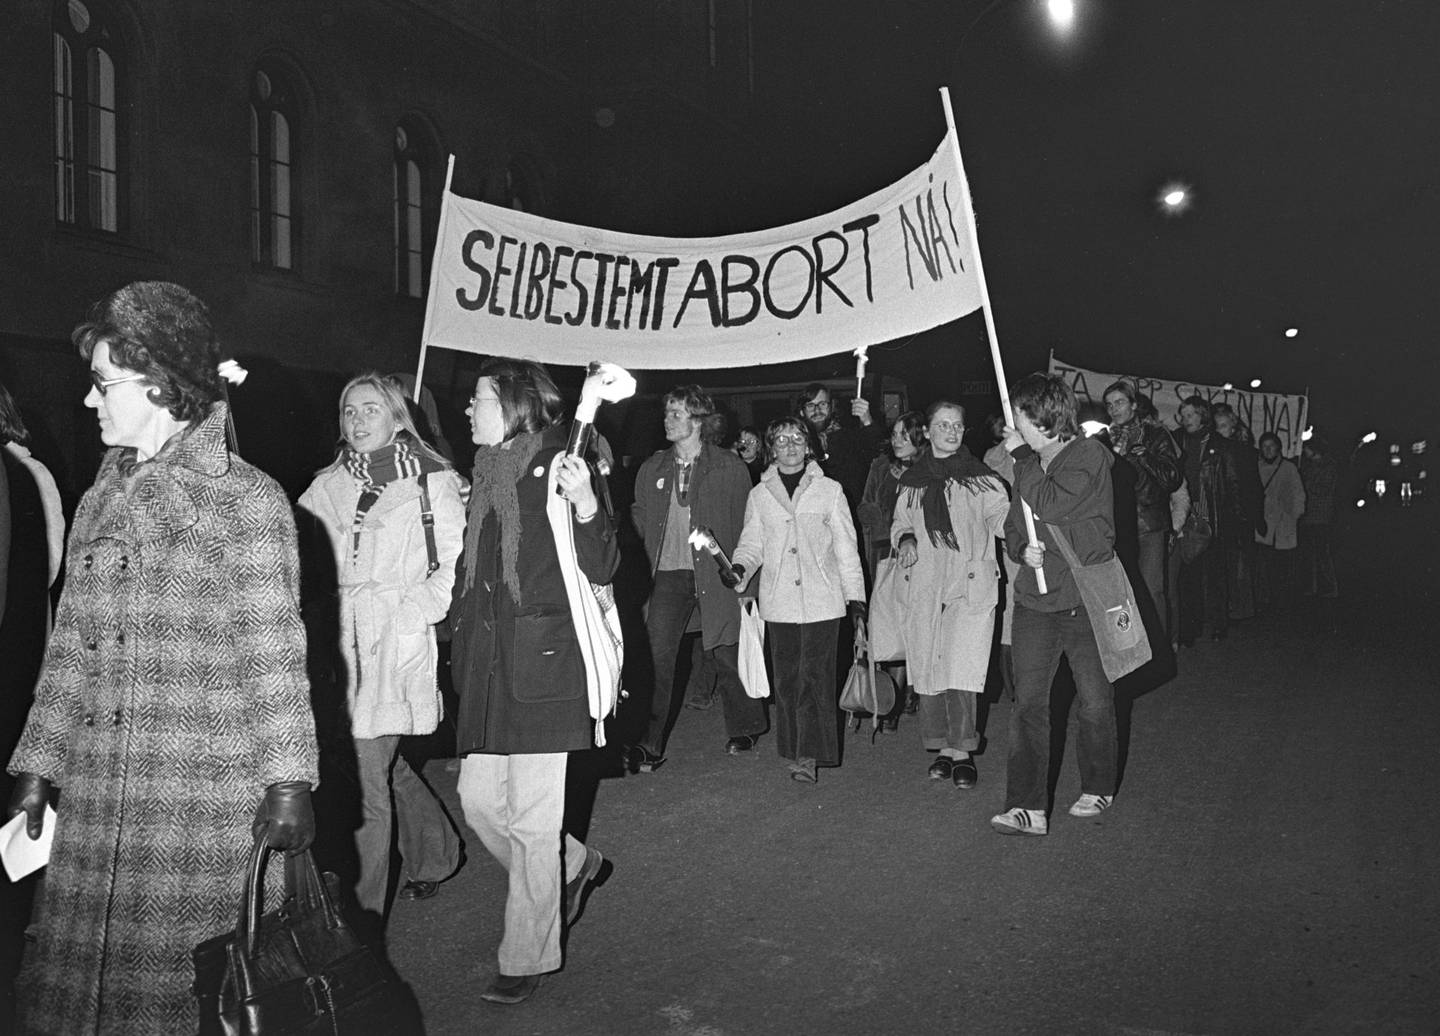 Kampen: Demonstrasjon for selvbestemt abort i Oslo i 1973. Rundt 1.000 deltakere gikk i demonstrasjonstoget fra      Youngstorget til Universitetsplassen, til støtte for kravet om selvbestemt abort. FOTO: NTB SCANPIX